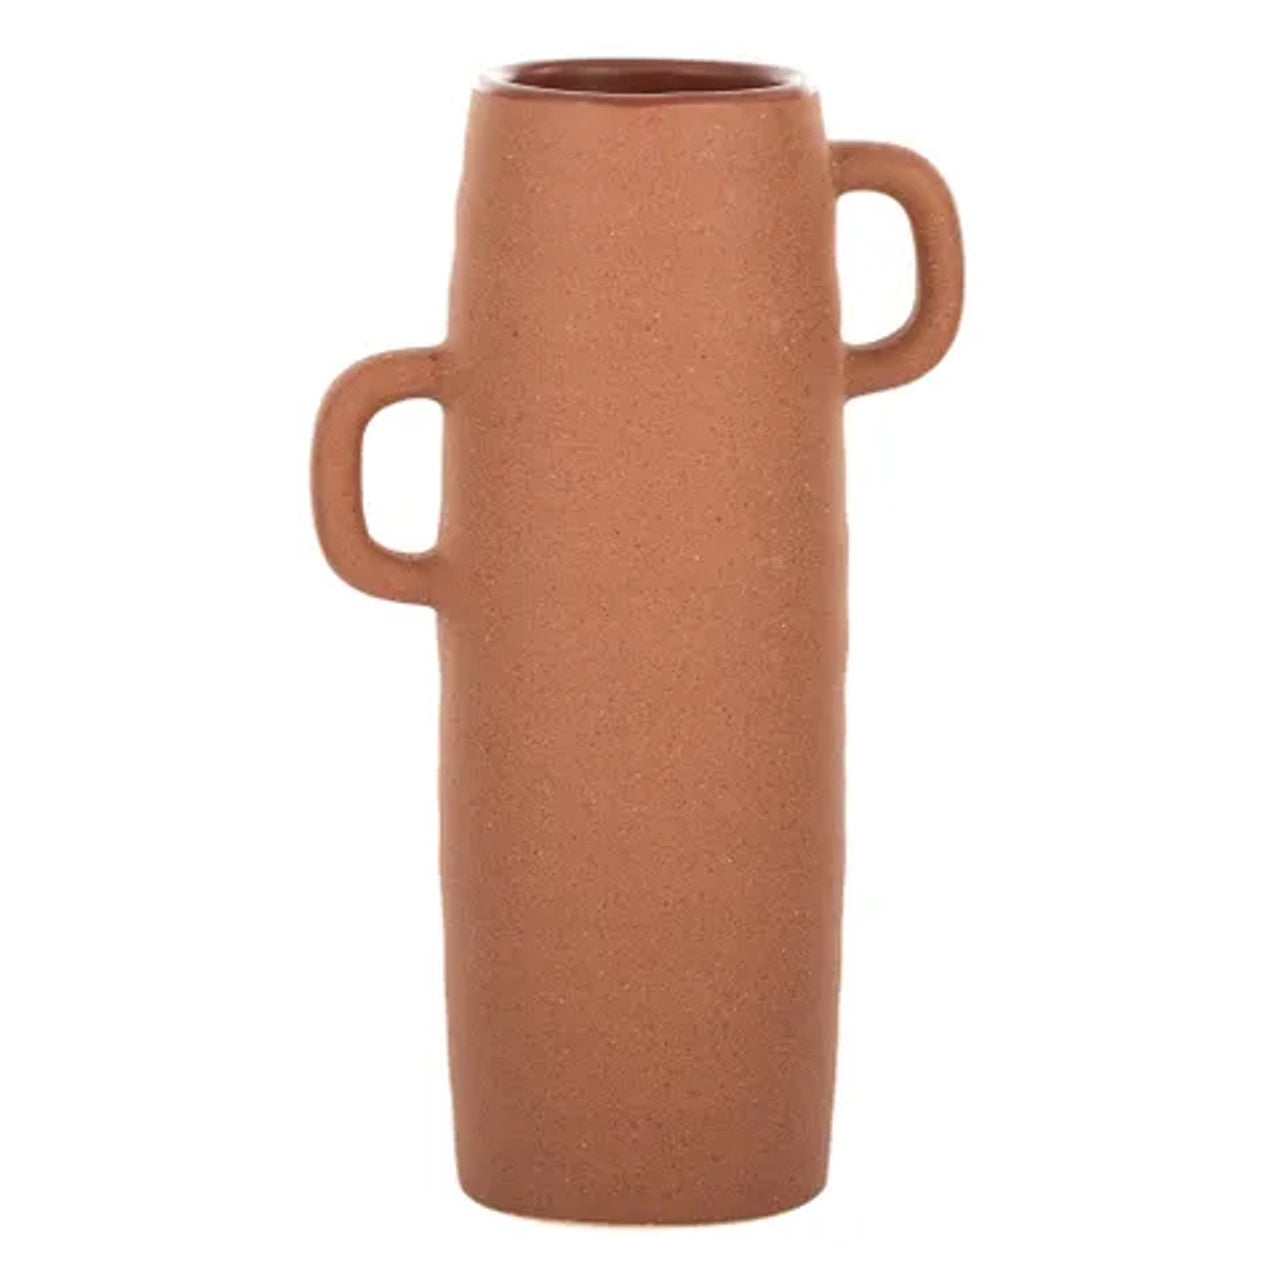 Taul Ceramic Vase (Tan)